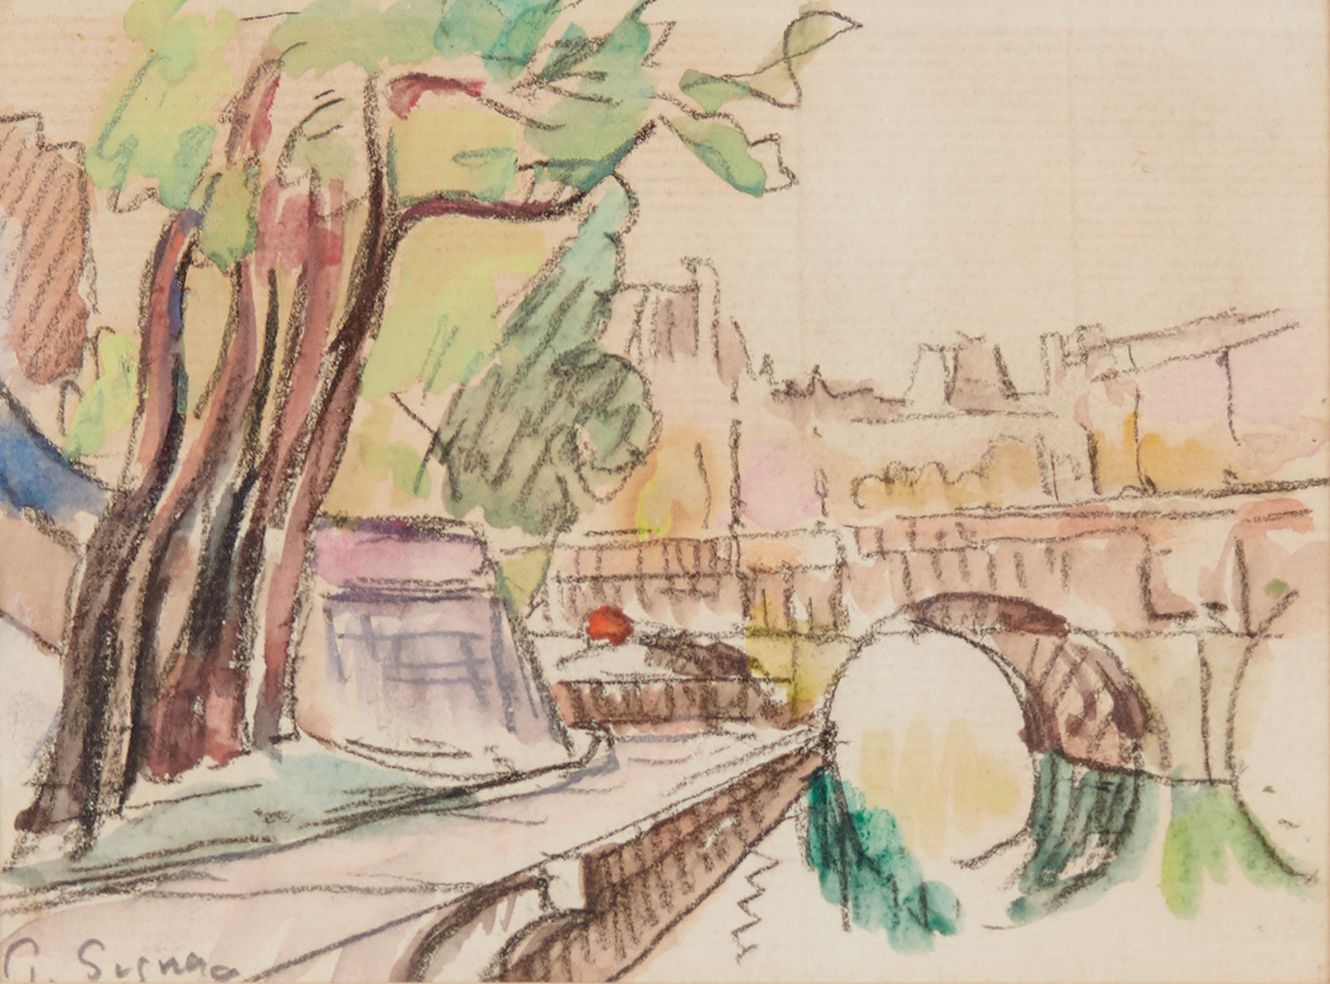 Paul SIGNAC 1863-1935 塞纳河上的桥
水彩画，左下方有签名
10.5 x 13.8 厘米

出处 ： 
雅克-罗德里格斯-亨利克斯，背面盖章&hellip;